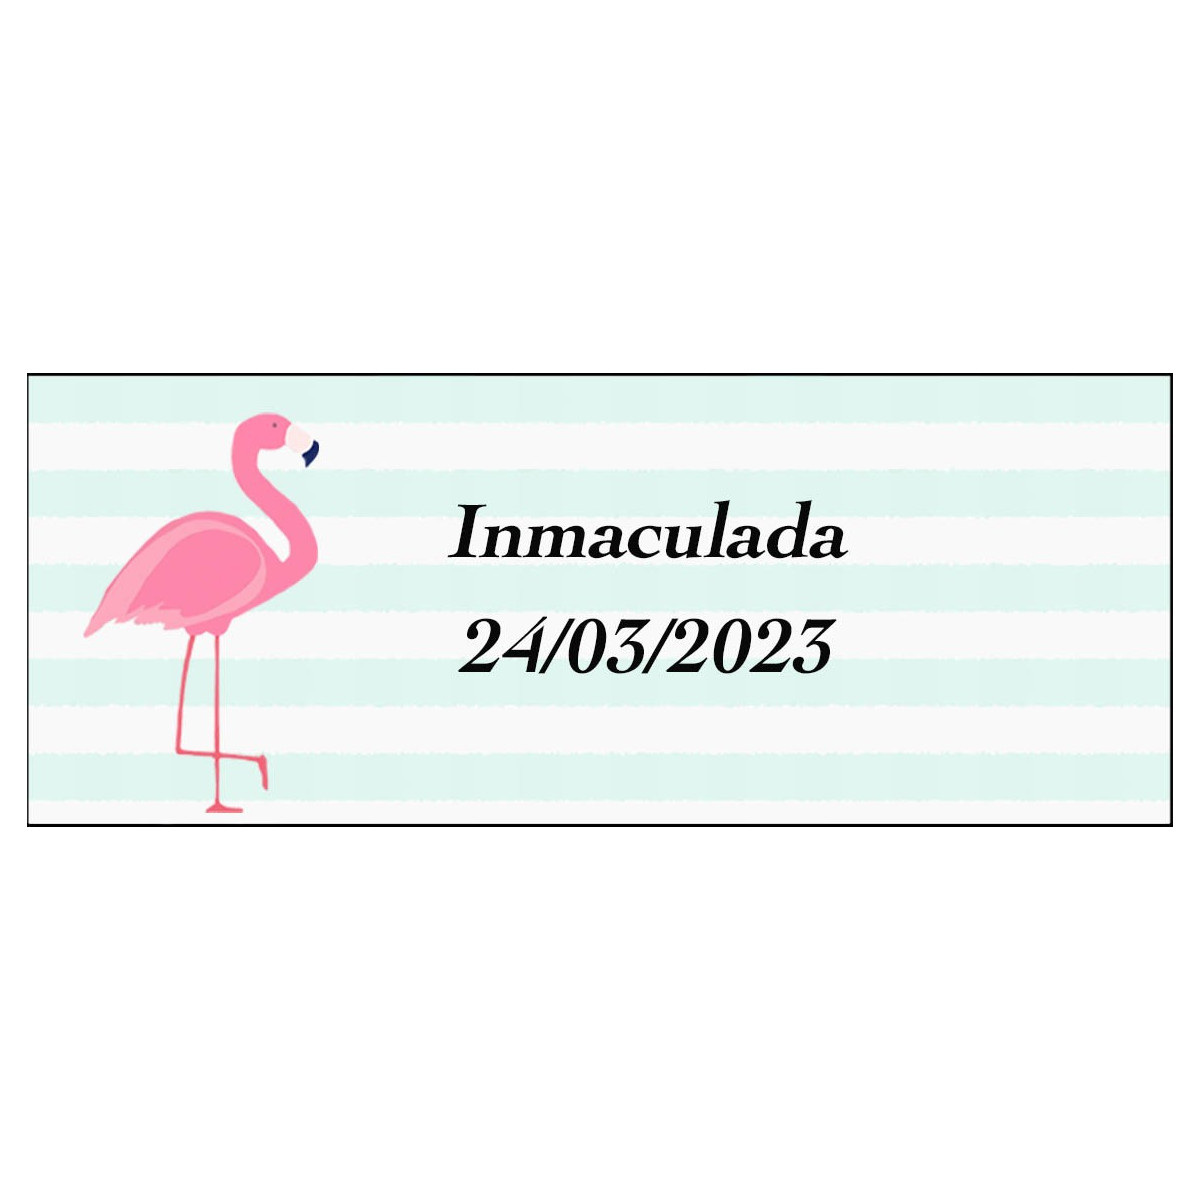 Adhesivo flamenco rectangular personalizado para nombre y fecha